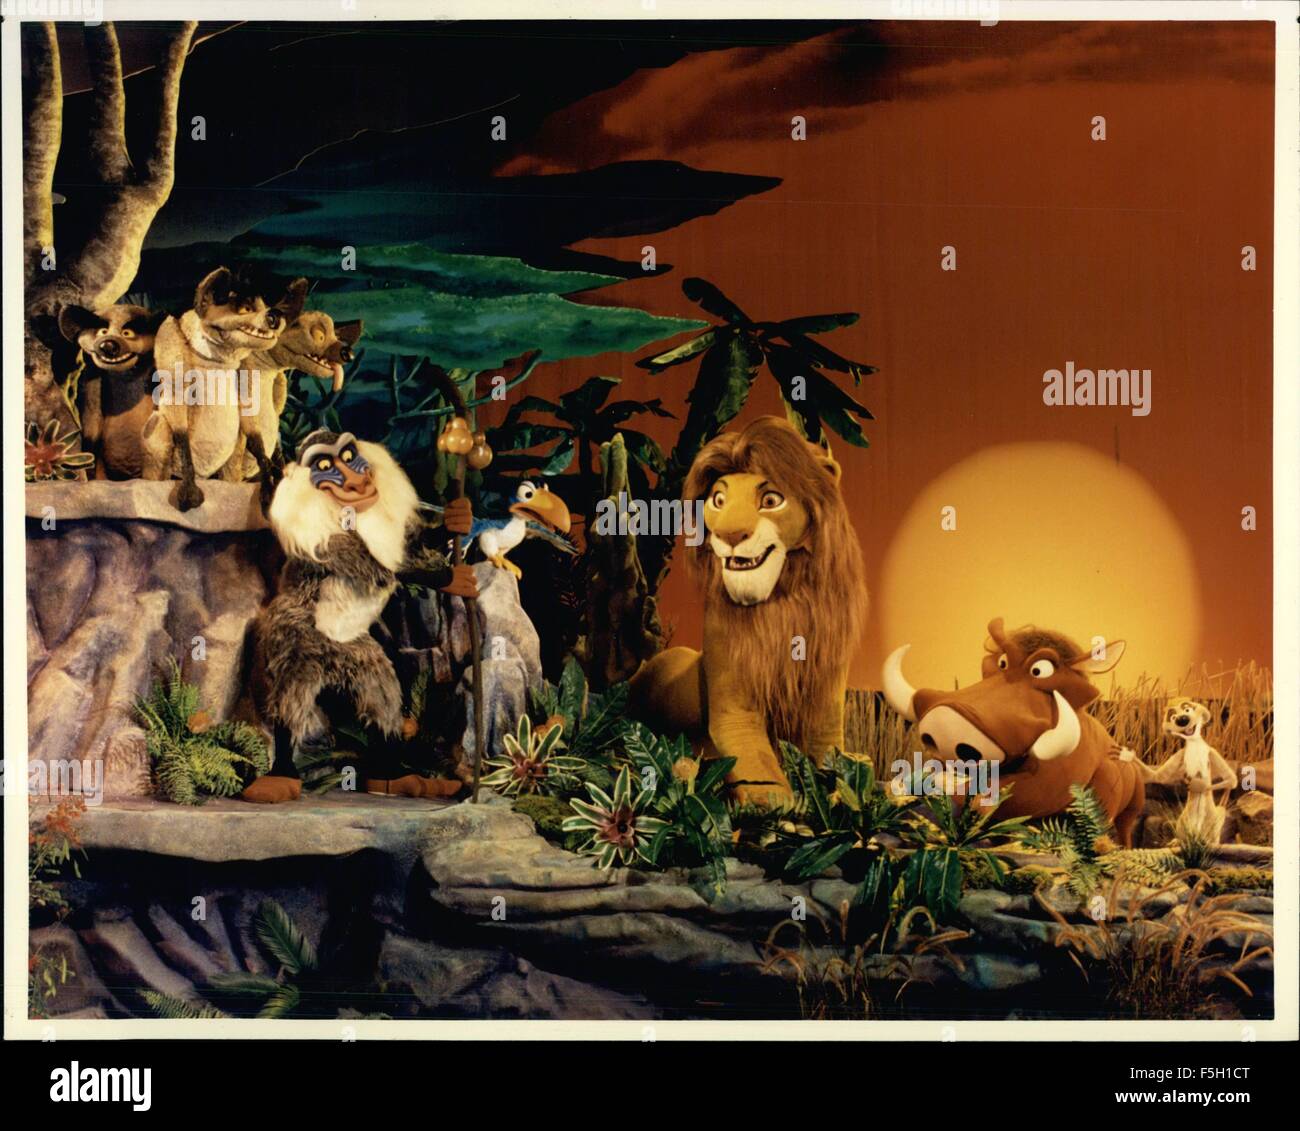 1994 - El Rey León y su elenco Simba es acompañado por una multitud de  personajes que aparecen en ''La leyenda del Rey León'', espectáculo teatral  en Magic Kingdom en el Walt